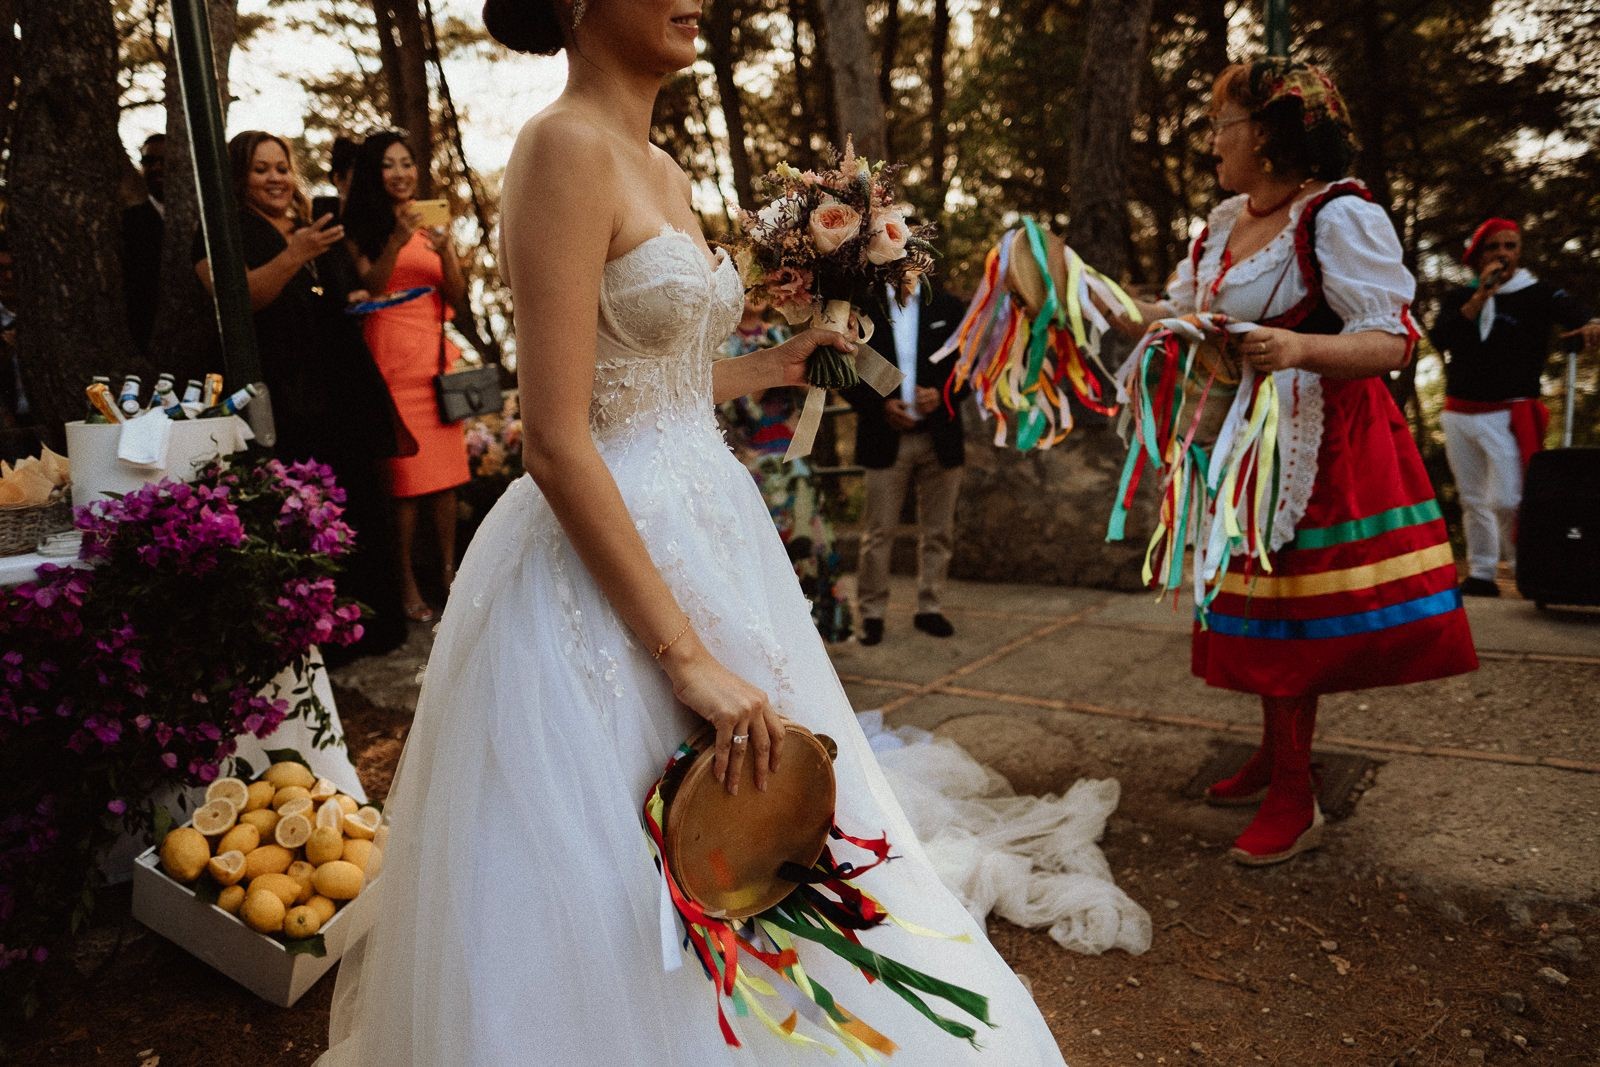 Authentic Wedding Ceremony in Capri - Wedding in Capri